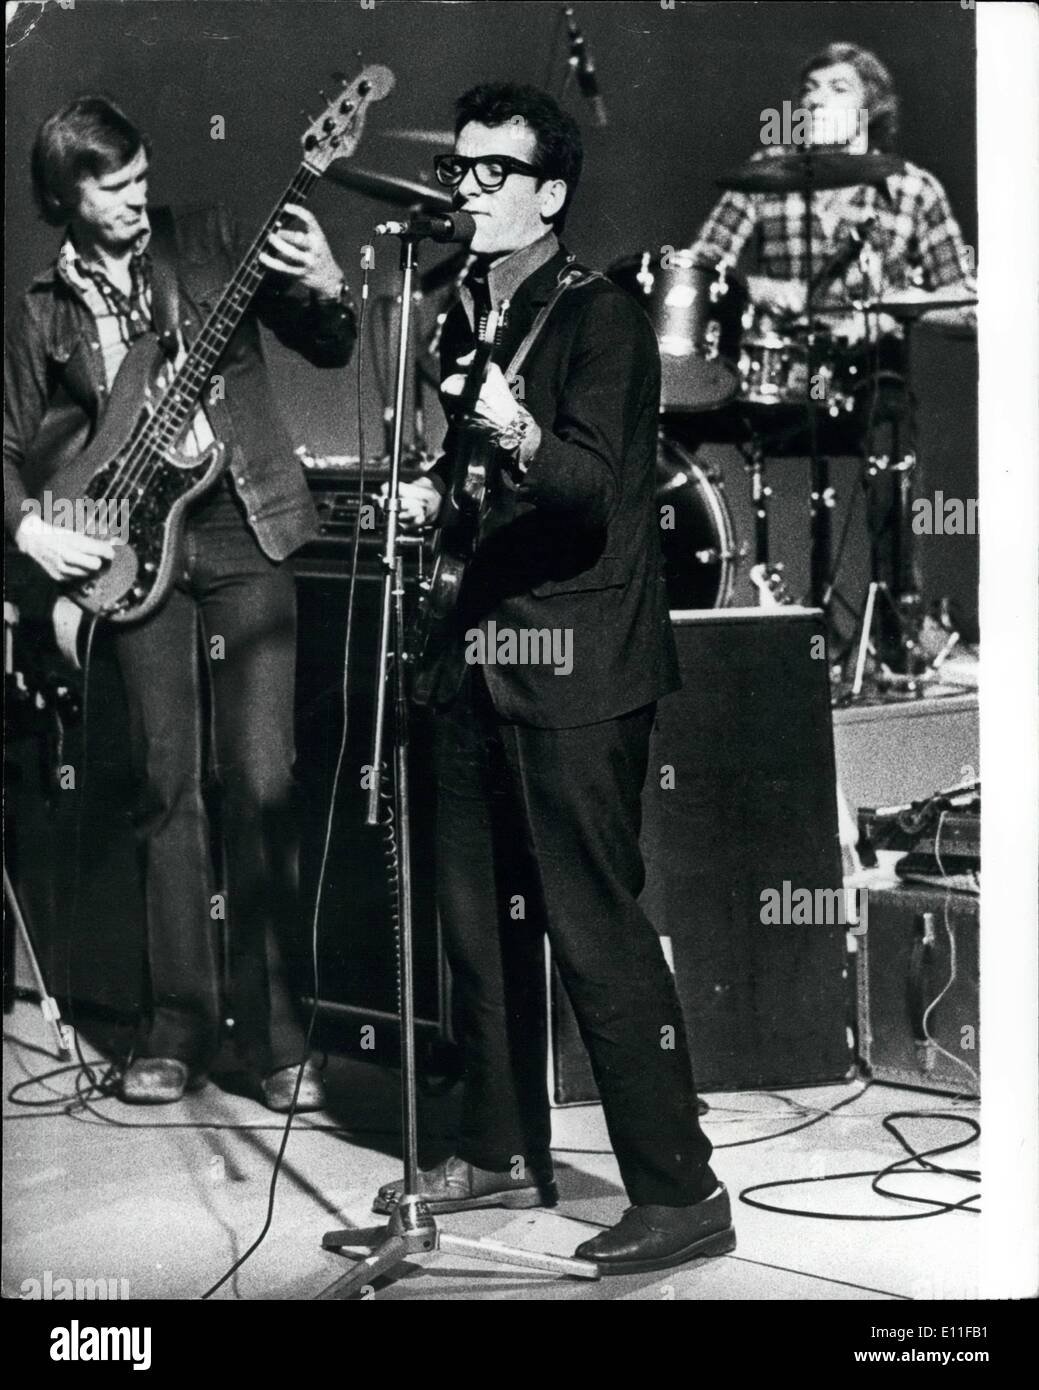 Ottobre 10, 1977 - Elvis Costello a Stoccolma. Elvis Costello, uno dei nomi più caldi sulla scena rock britannica, le sue canzoni sono state paragonate a grandi nomi come Bob Dylan, è in procinto di fare il suo primo tour degli Stati Uniti. La foto mostra: Elvis Costello visto durante una recente performance a Stoccolma. AM/Keystone Foto Stock